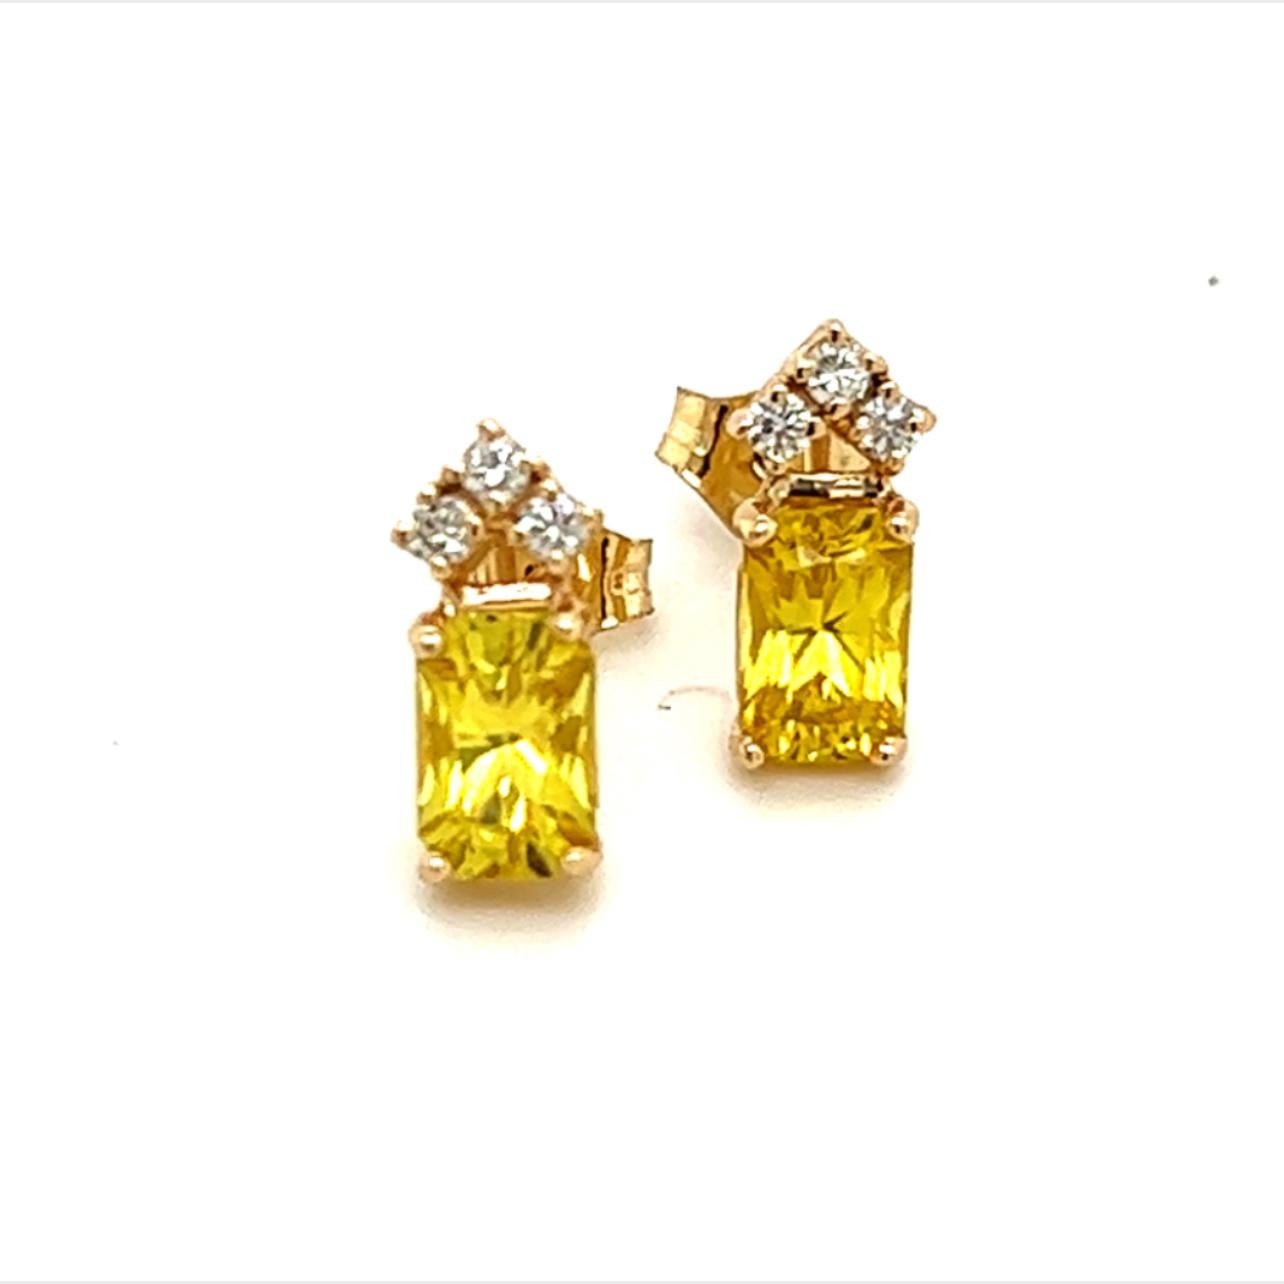 Natürlicher Saphir Diamant Ohrringe 14k Gold 1,74 TCW zertifiziert $1,590 121259

Dies ist ein einzigartiges, maßgeschneidertes, glamouröses Schmuckstück!

Nichts sagt mehr 